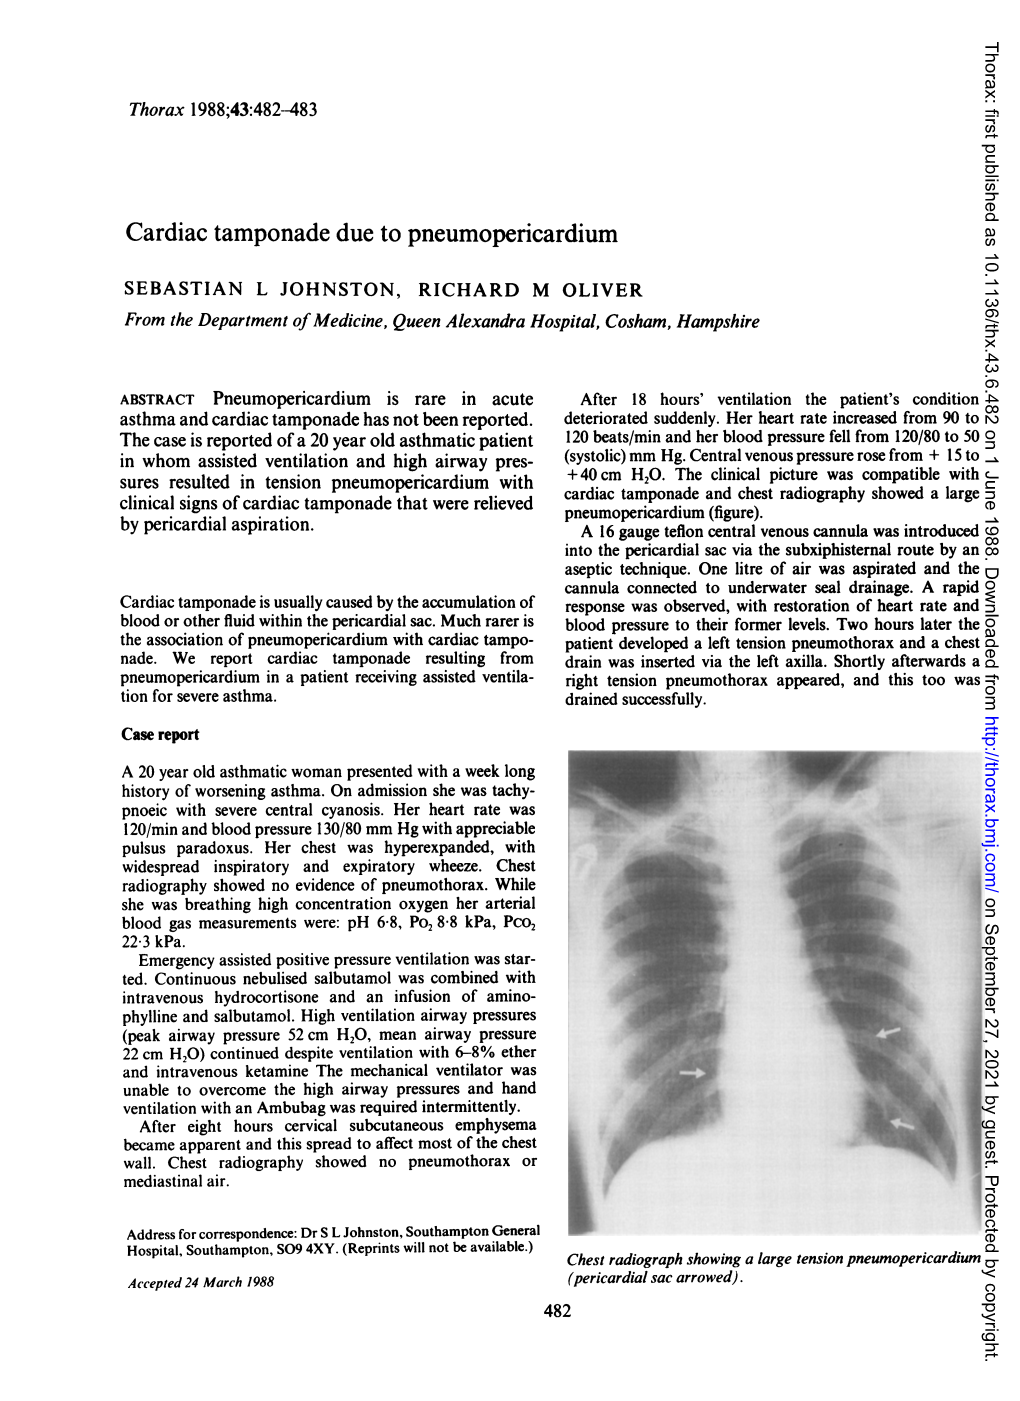 Cardiac Tamponade Due to Pneumopericardium